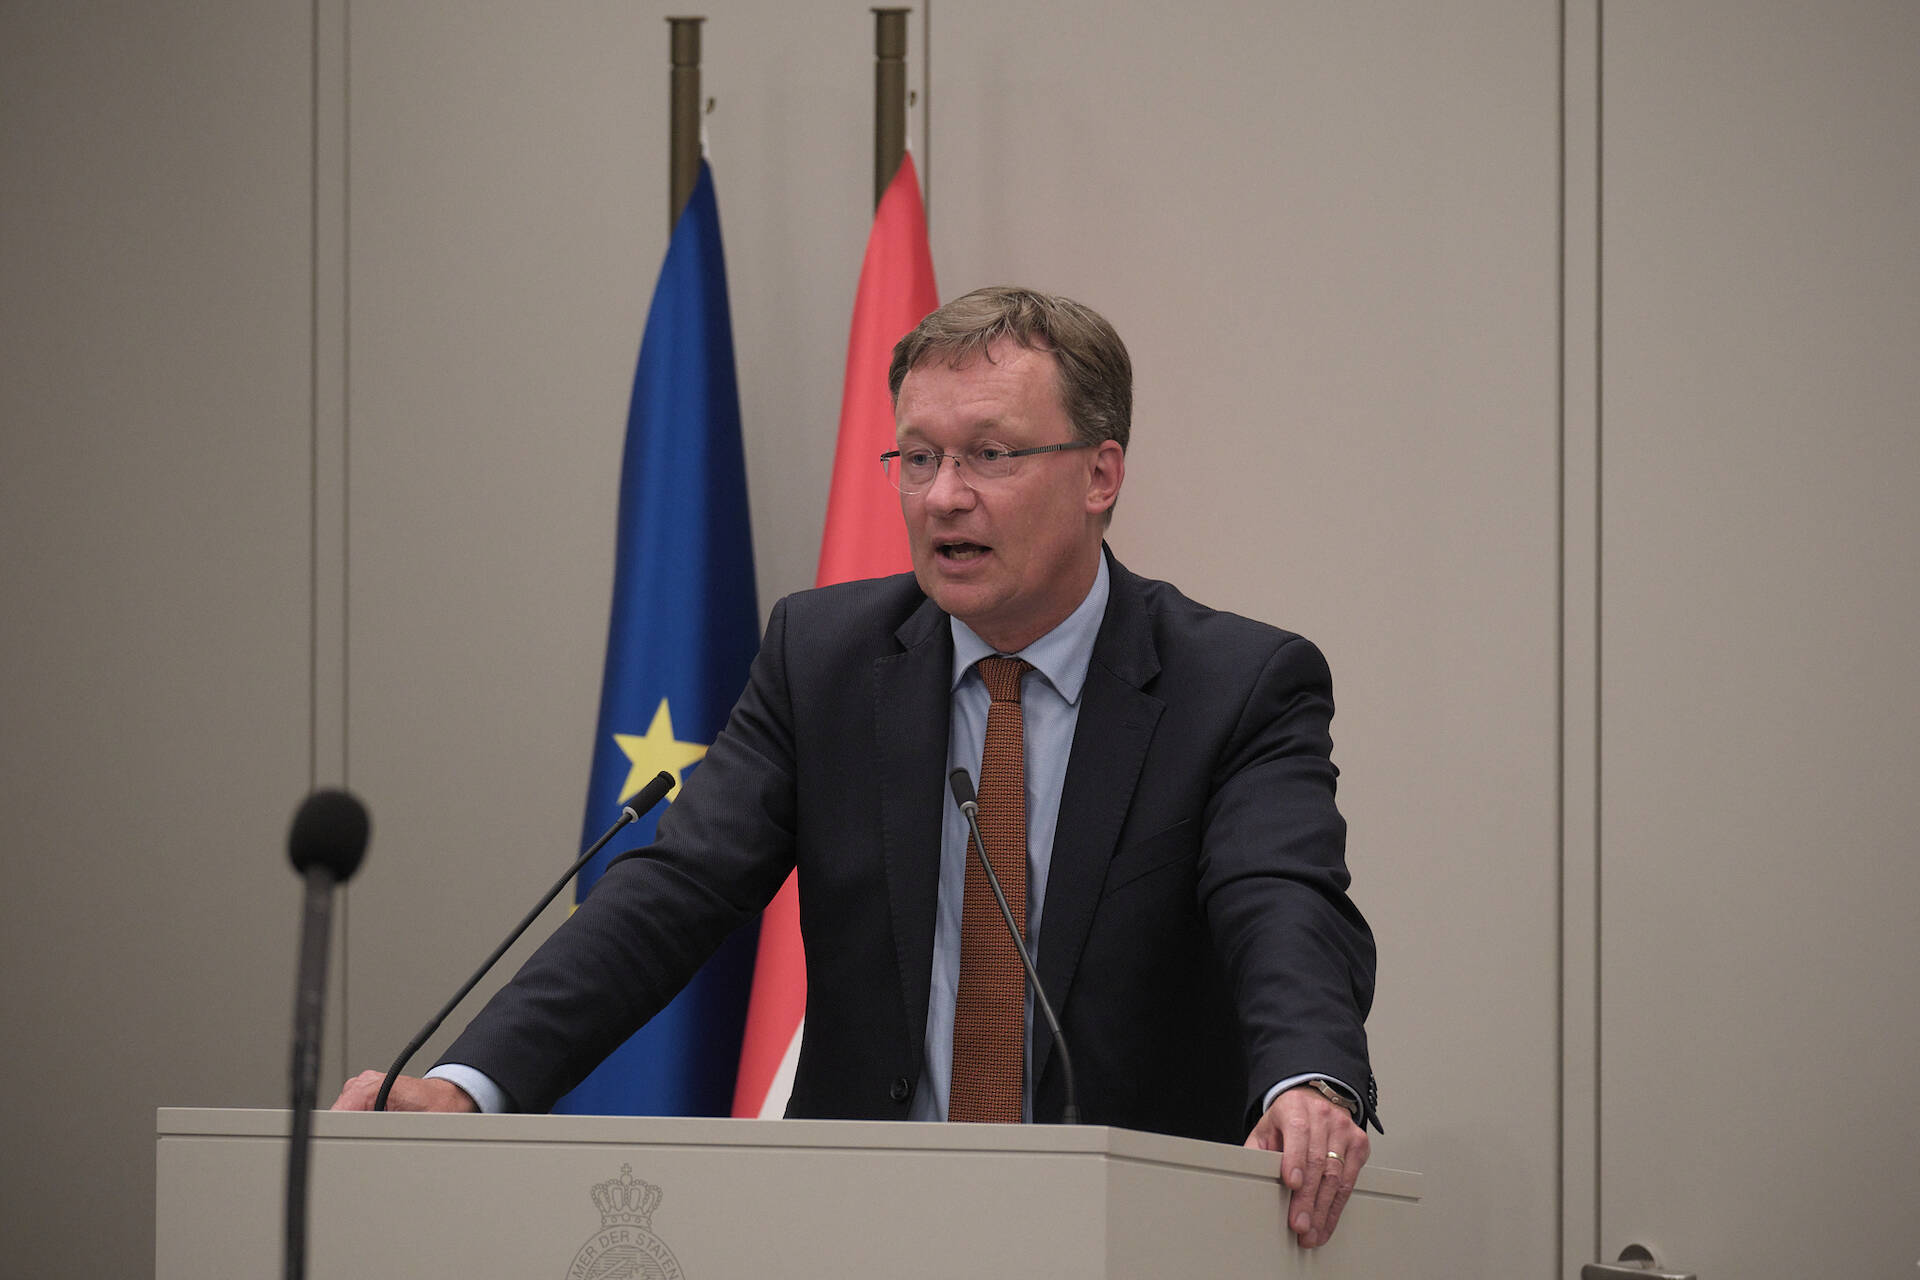 Senator Van Dijk (SGP)